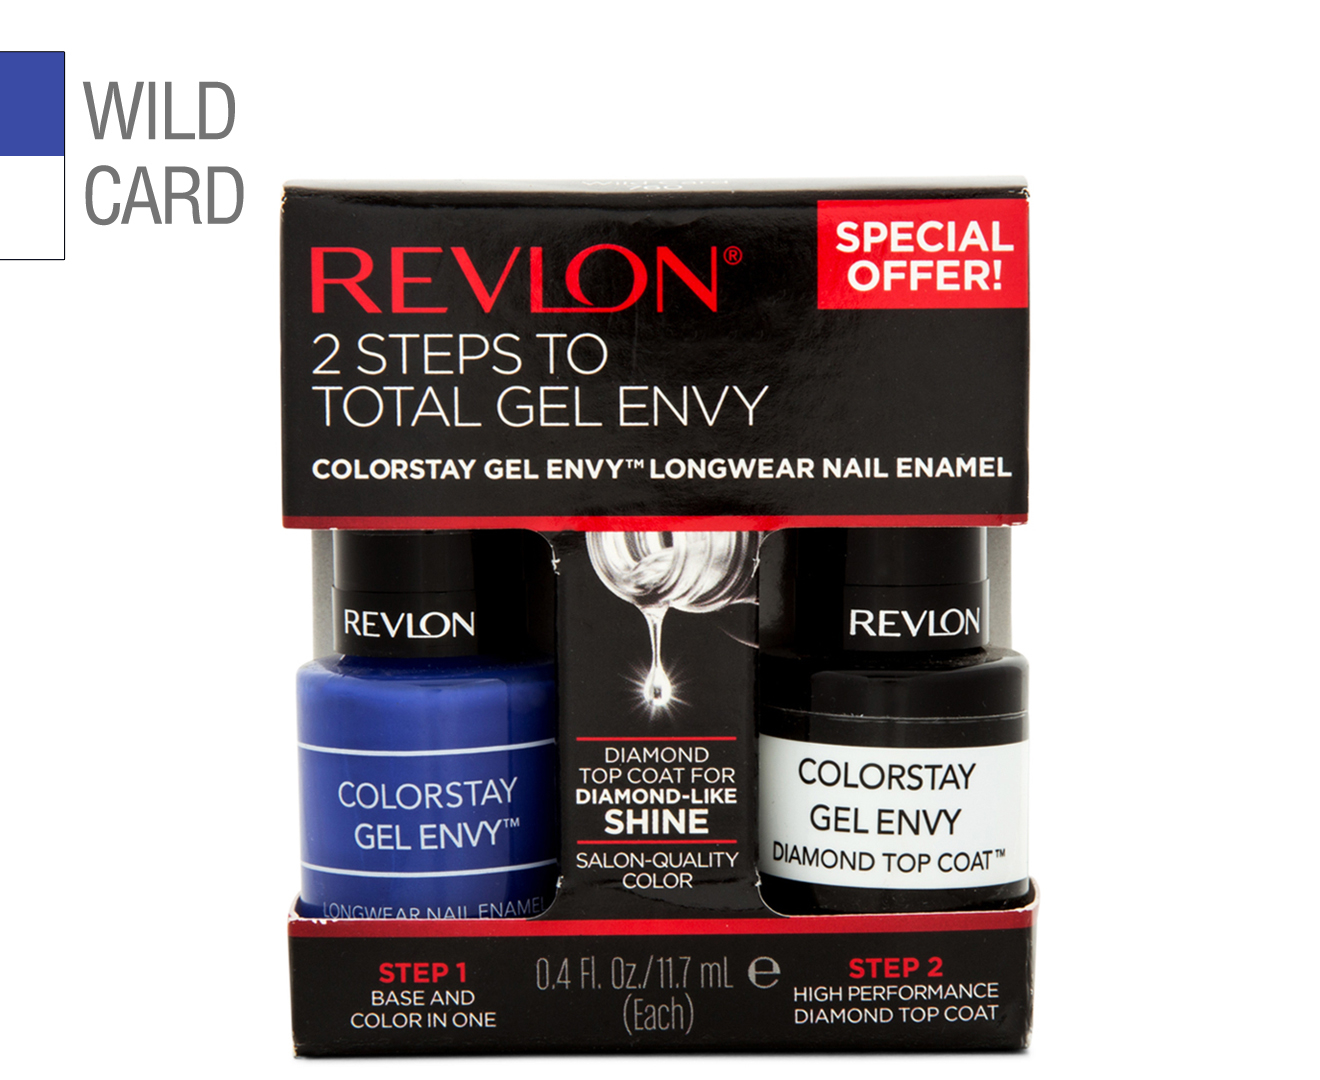 6. Revlon ColorStay Gel Envy in "Wild Card" - wide 2